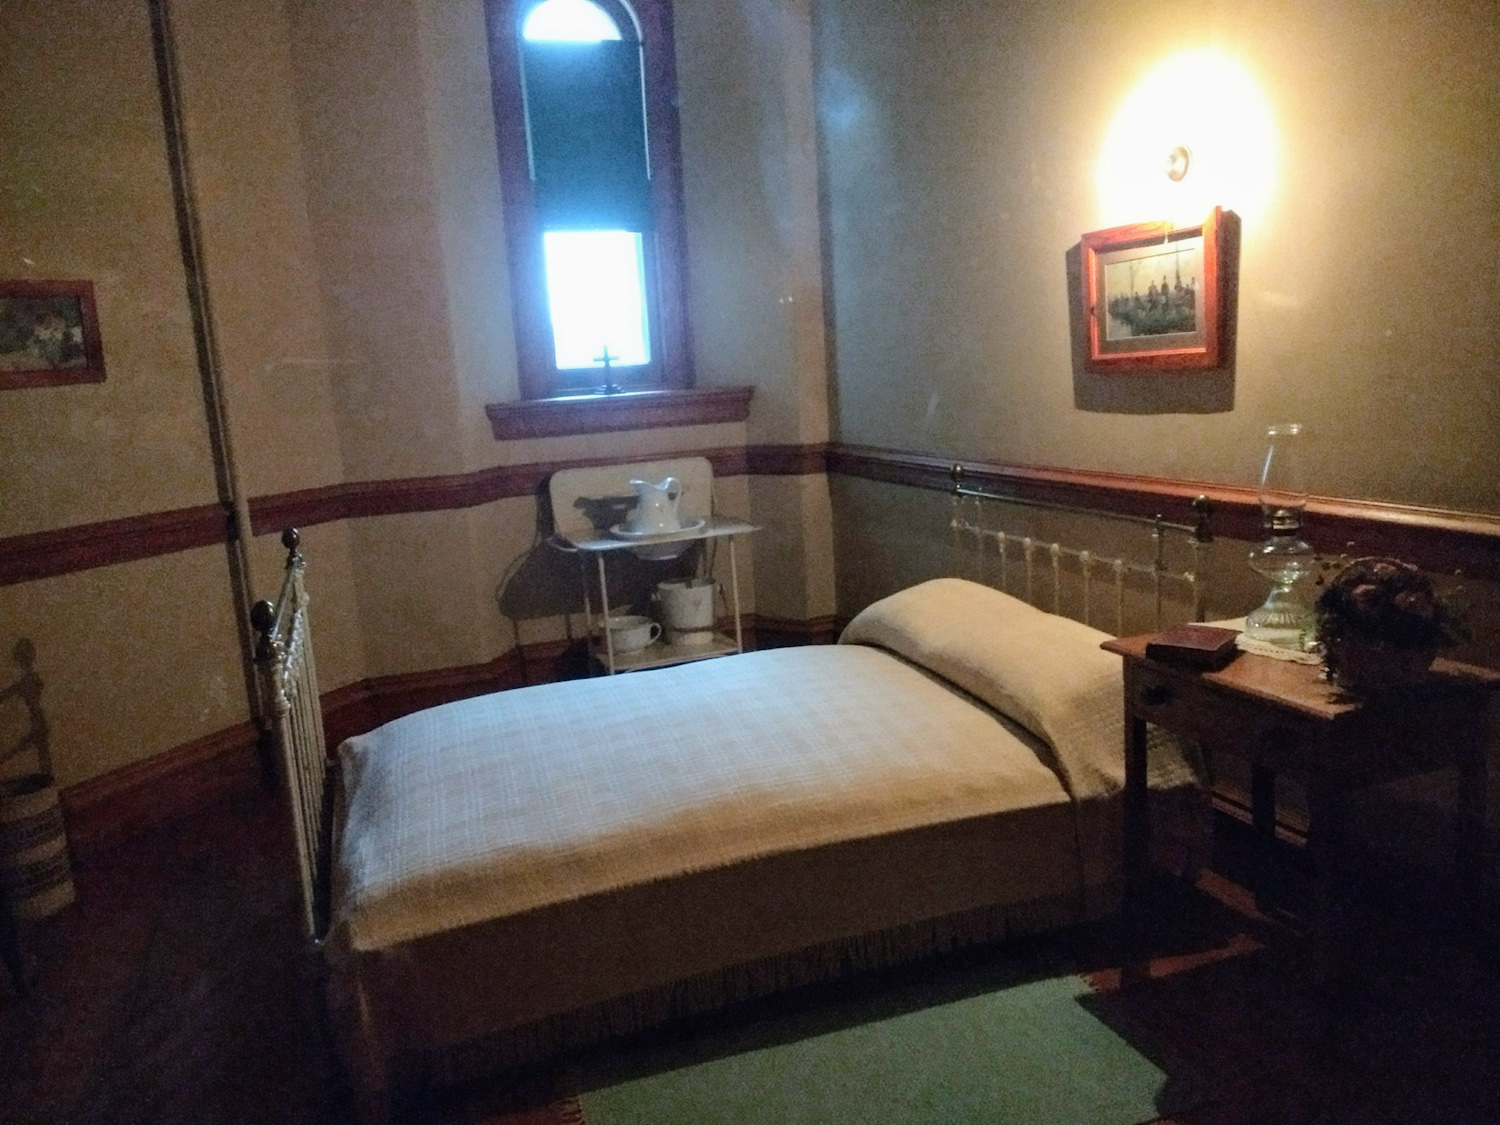 Servants' bedroom